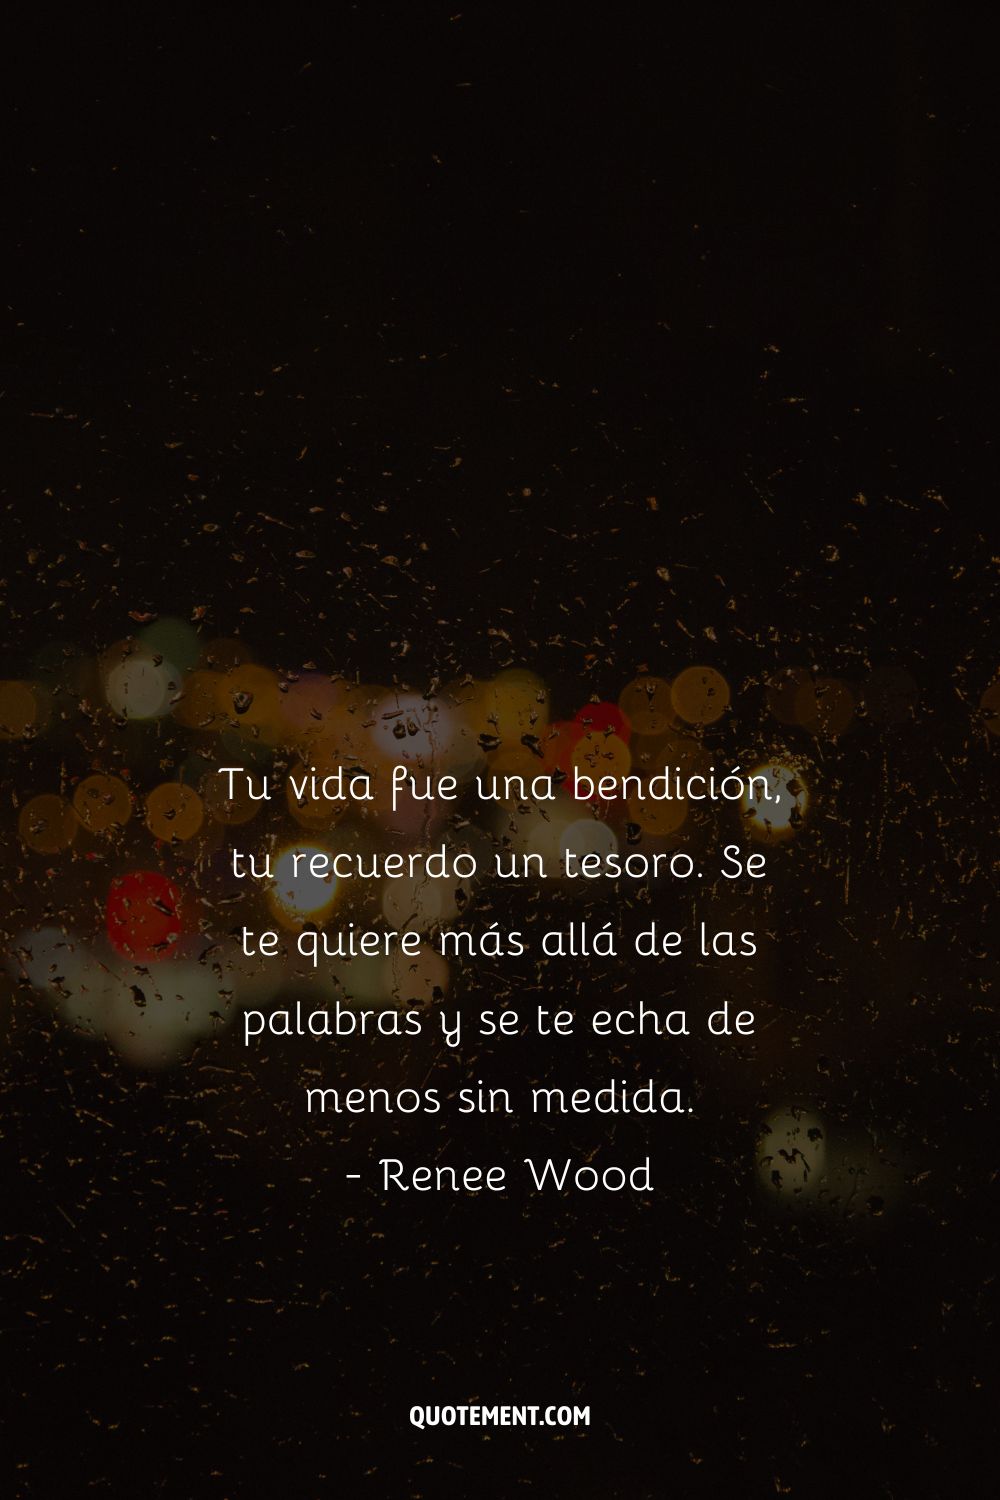 Tu vida fue una bendición, tu recuerdo un tesoro. Te amamos más allá de las palabras y te echamos de menos sin medida. - Renee Wood